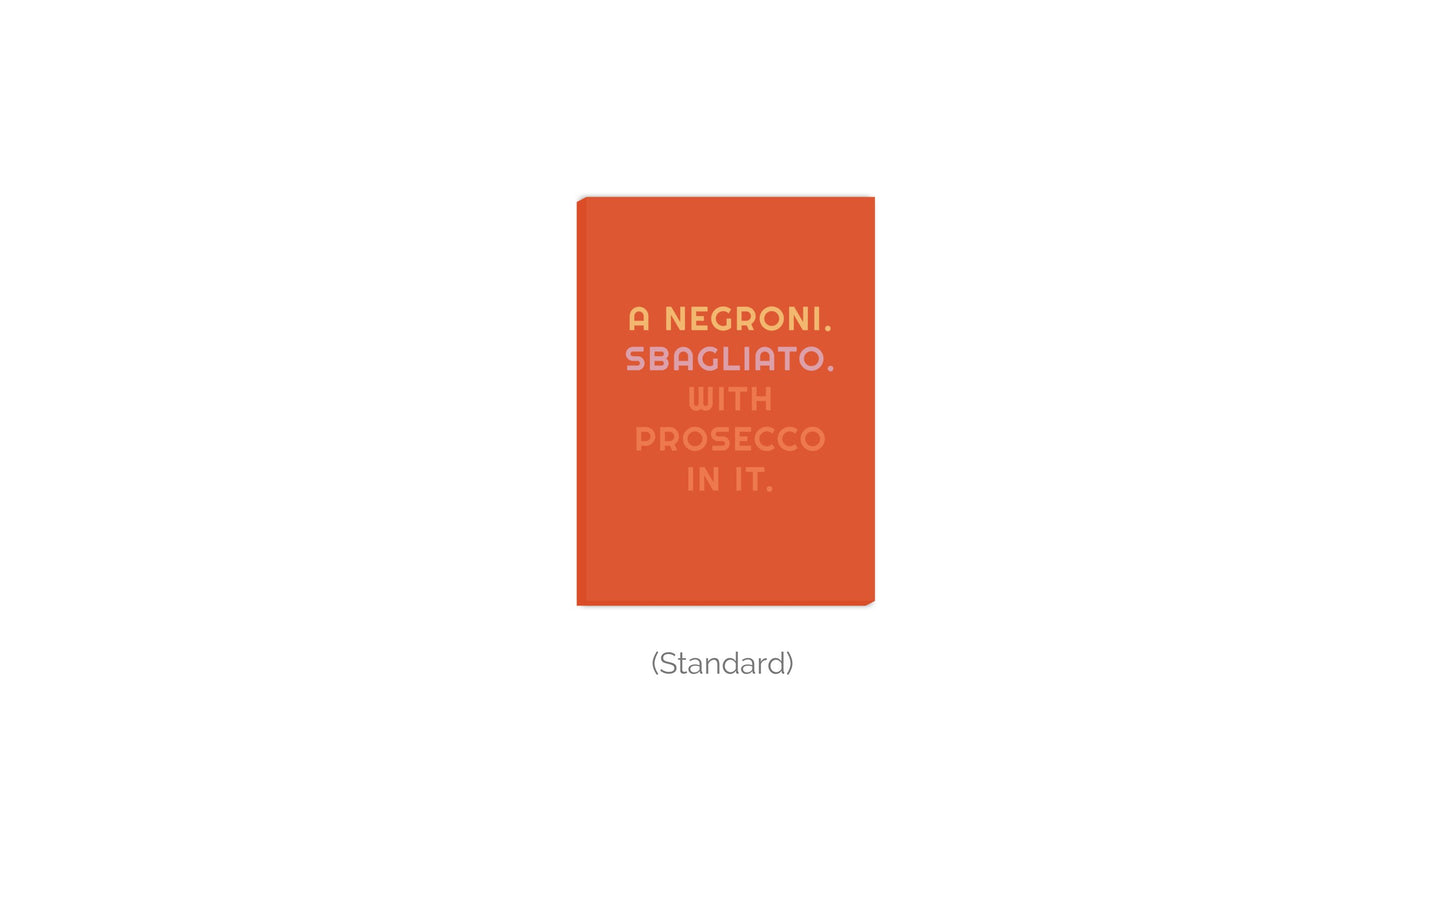 Leinwand A Negroni. Sbagliato. With Prosecco In It. - La Dolce Vita Collection